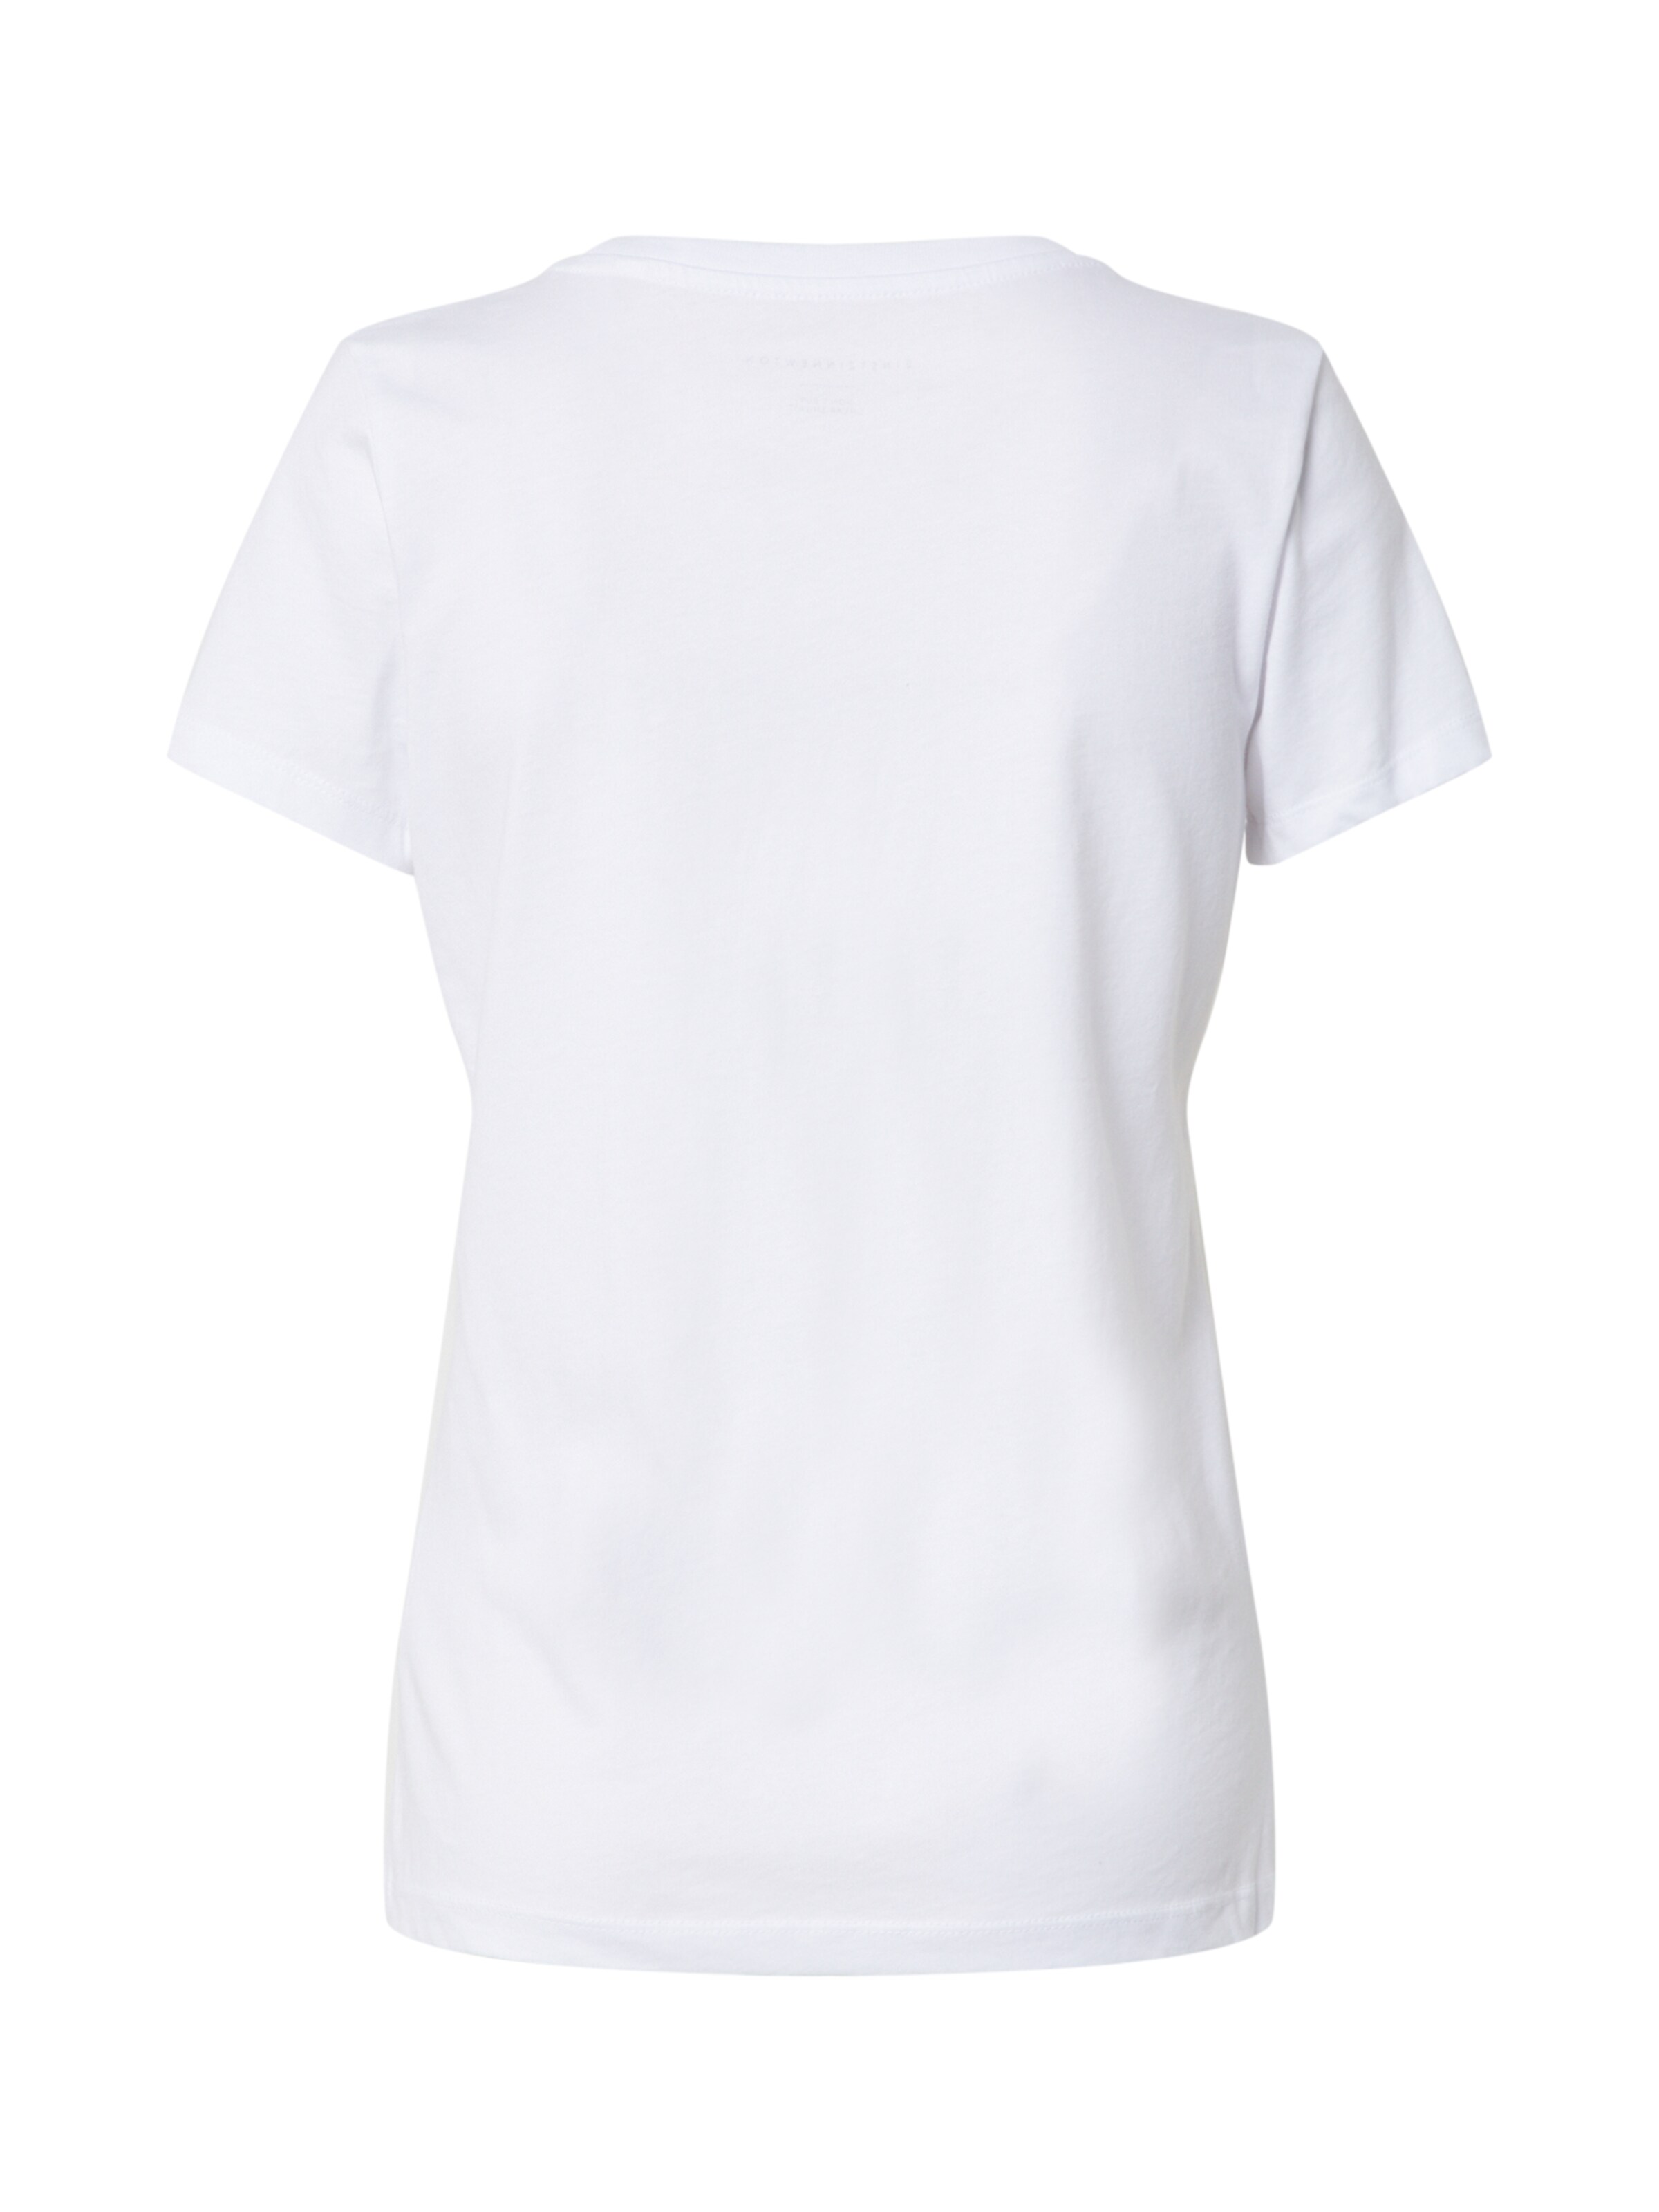 EINSTEIN & NEWTON Shirt Jadore in Weiß 